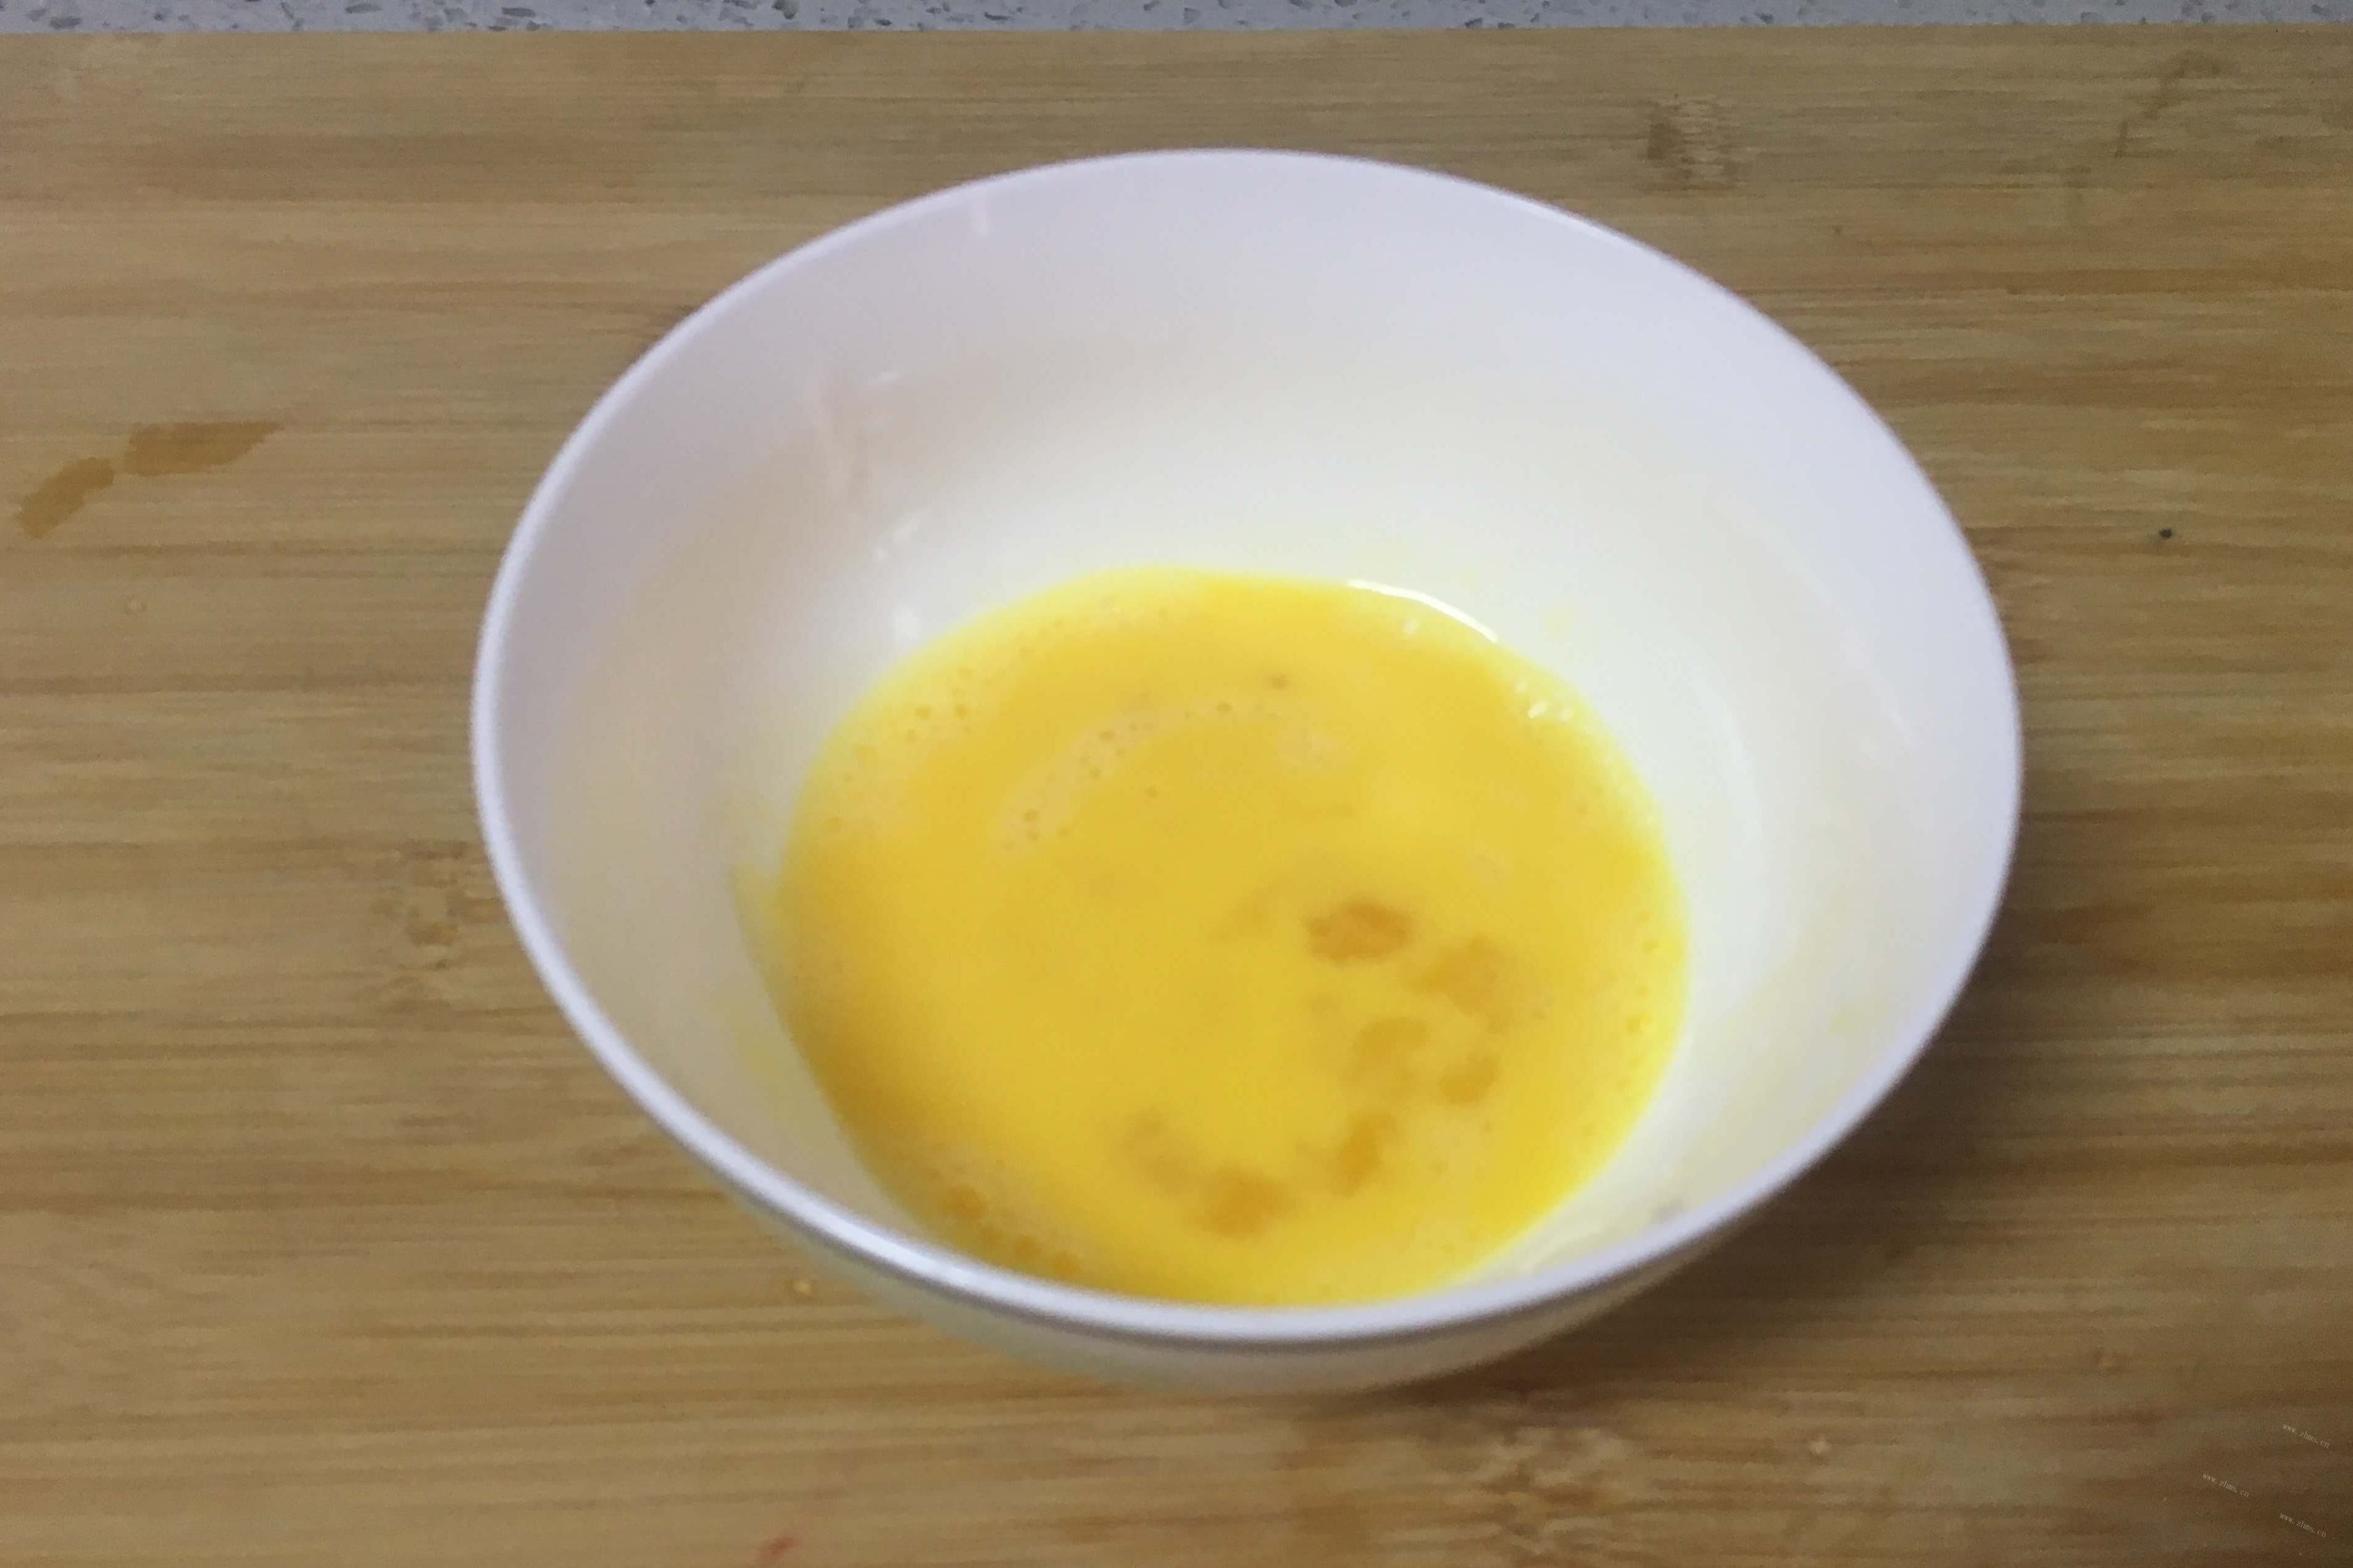 有了这个“秘密武器”的鸡蛋汤，美味程度让人难以抵抗第四步